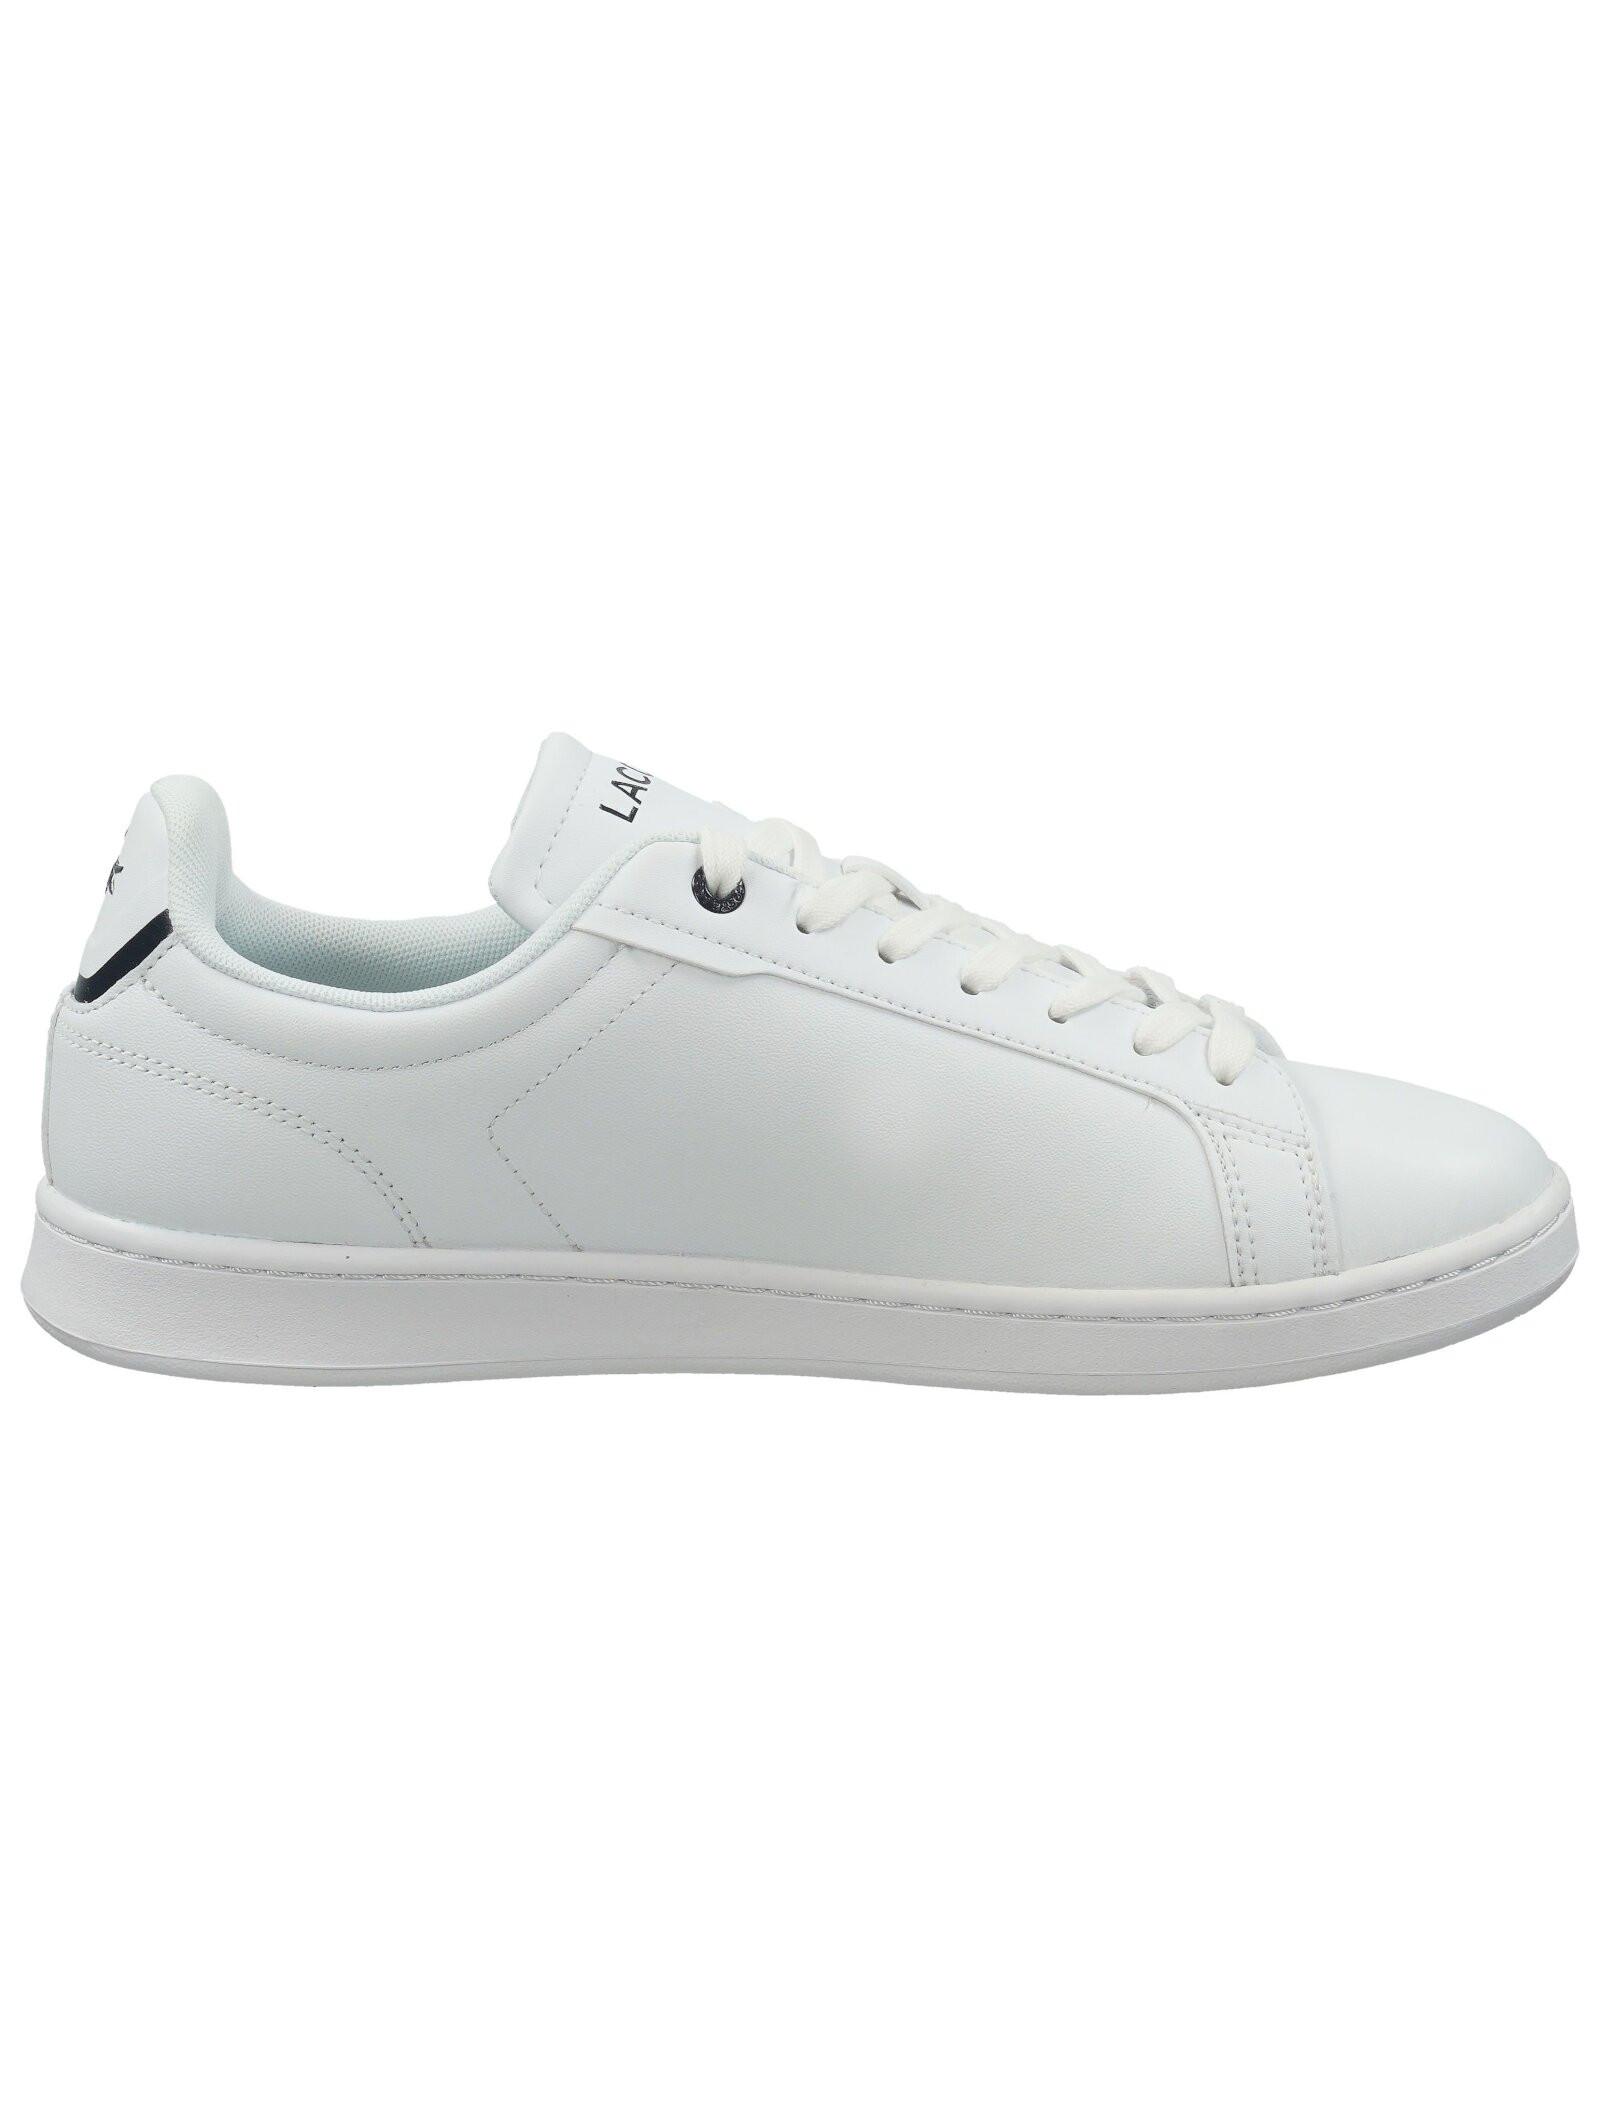 LACOSTE Carnaby Pro Sneaker 45SMA0110 